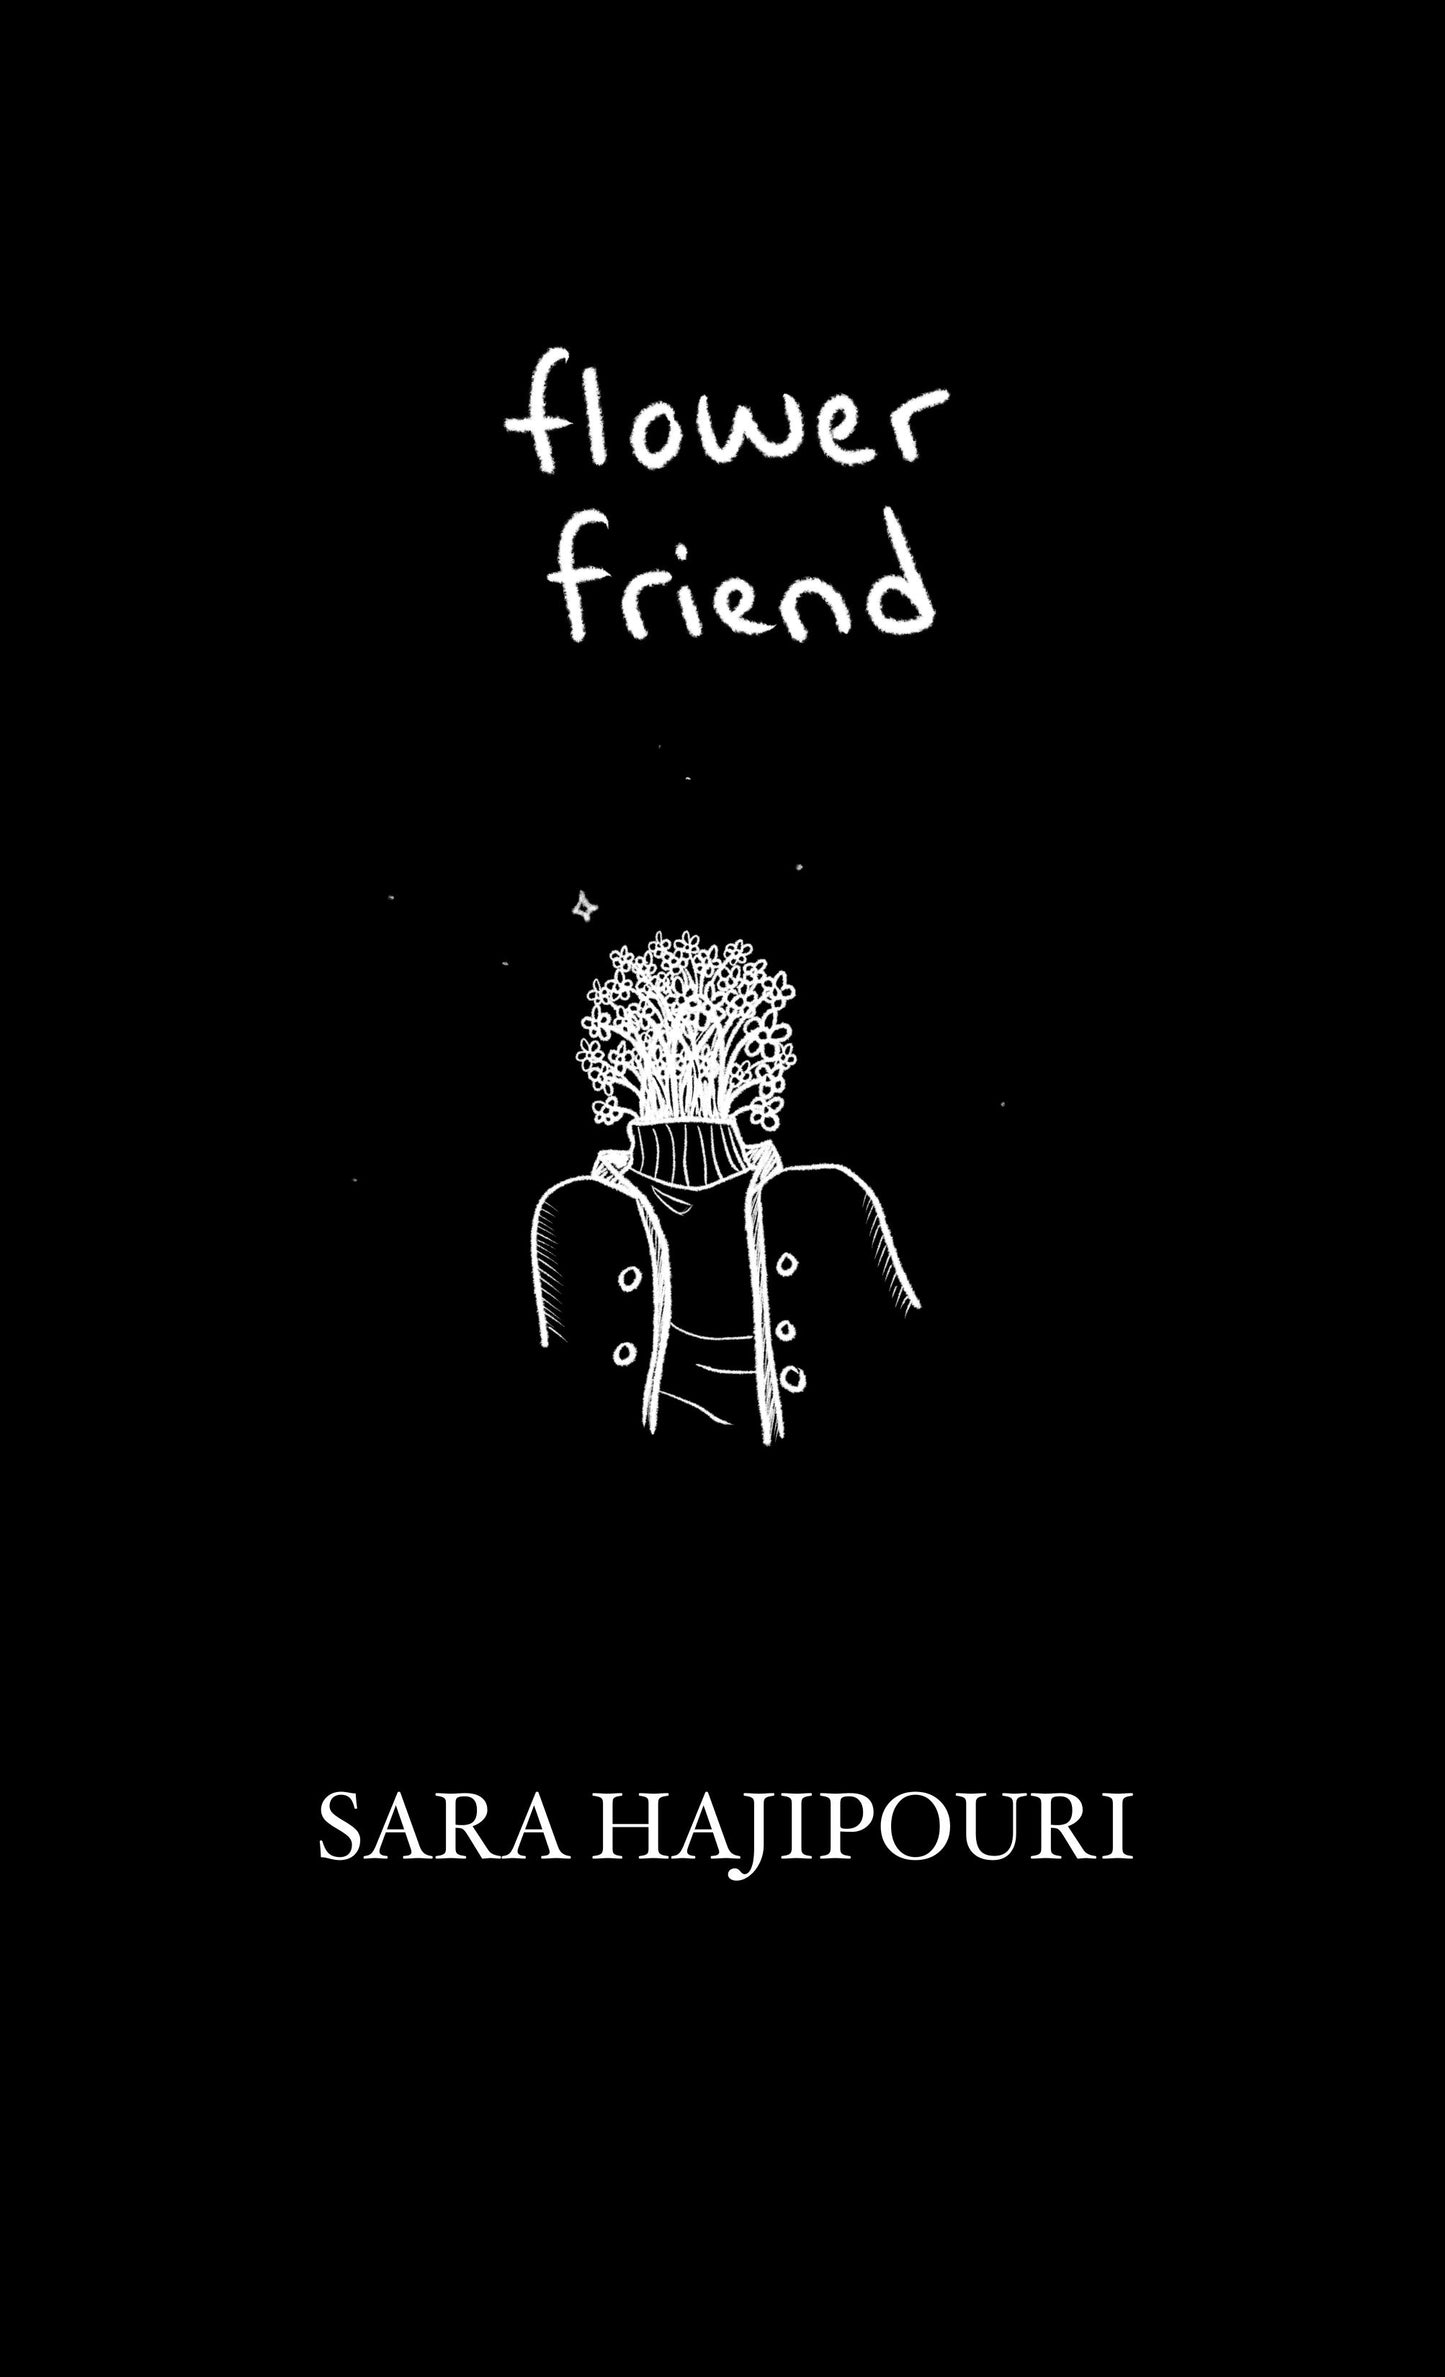 Flower Friend - Paperback